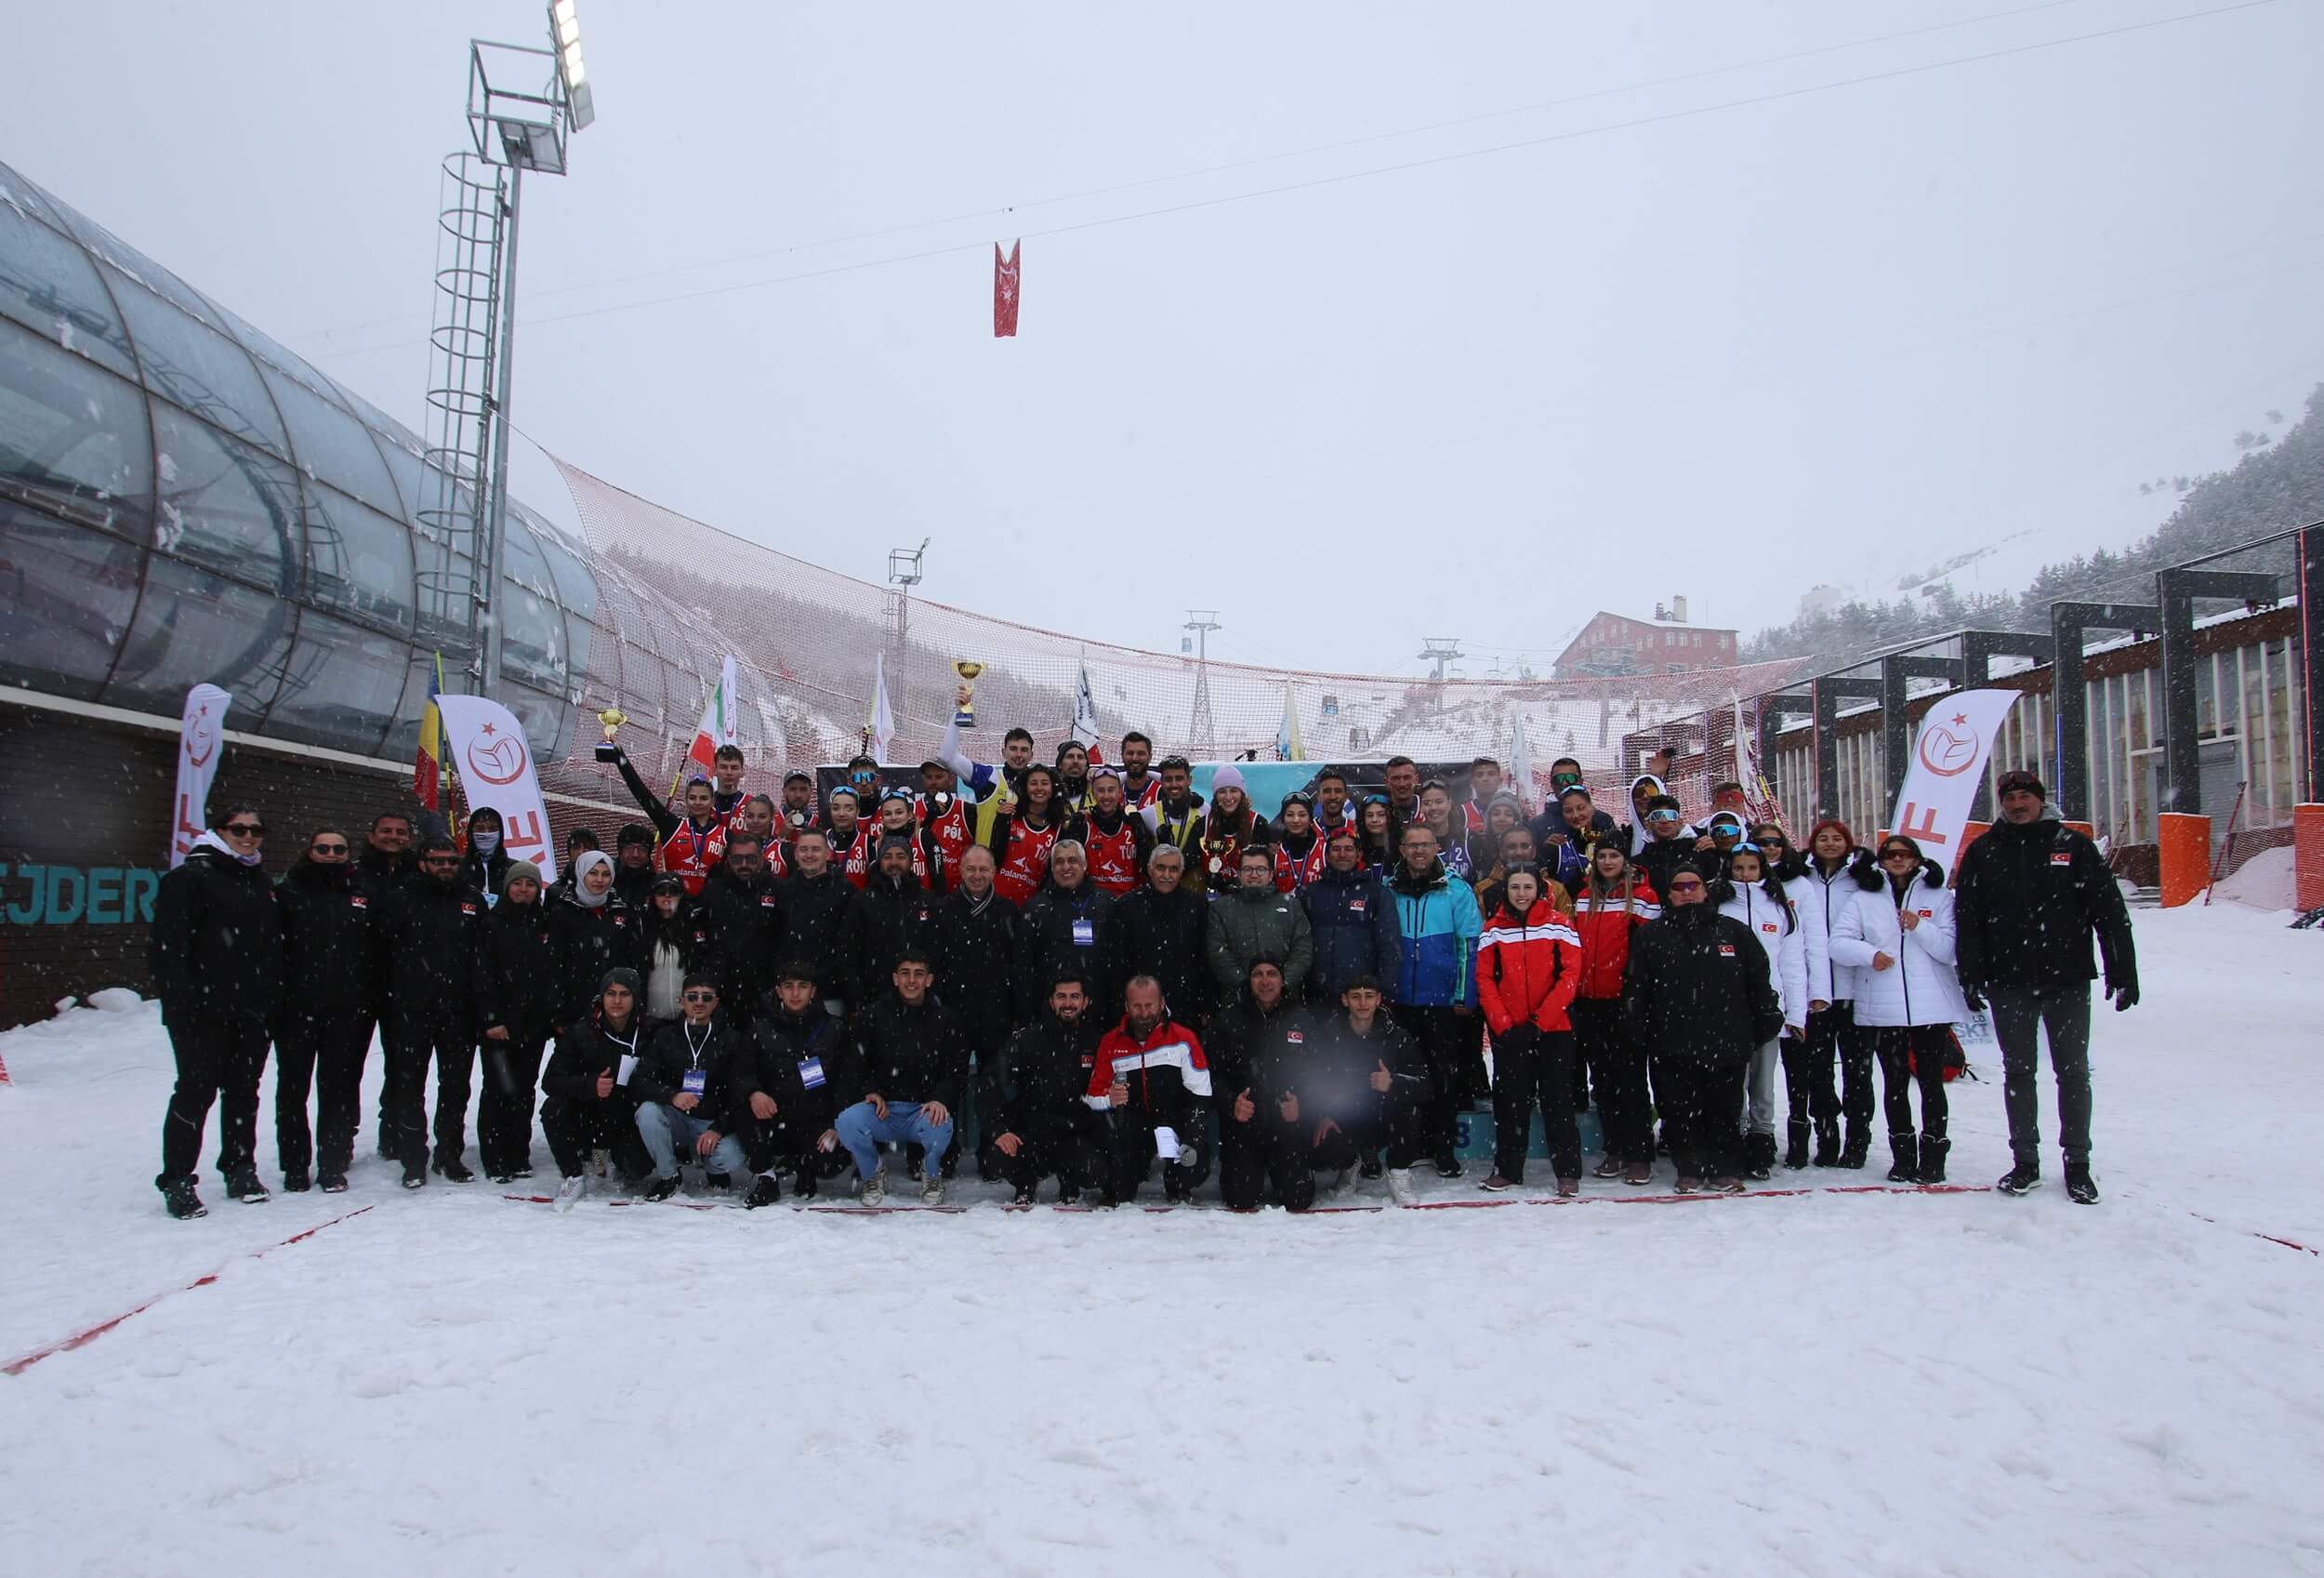 Millilerimiz Palandöken'de CEV Kar Voleybolu Avrupa Turu'nda 3 Madalya Kazandı!